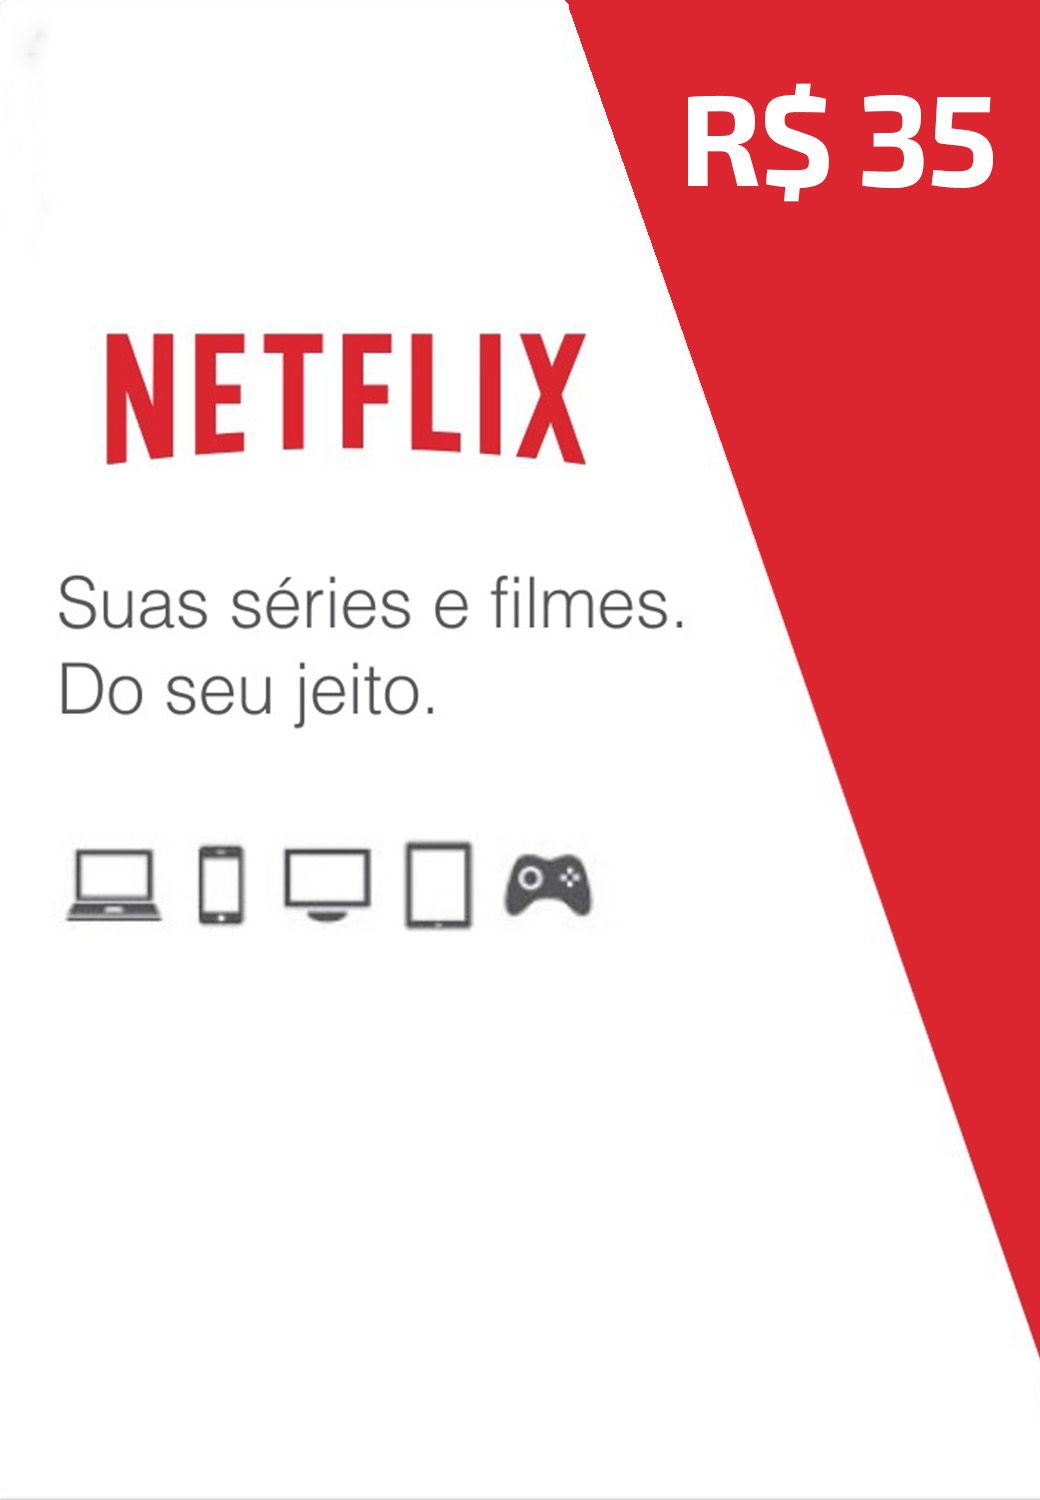 Netflix – Cartão Pré Pago R$ 150 – WOW Games